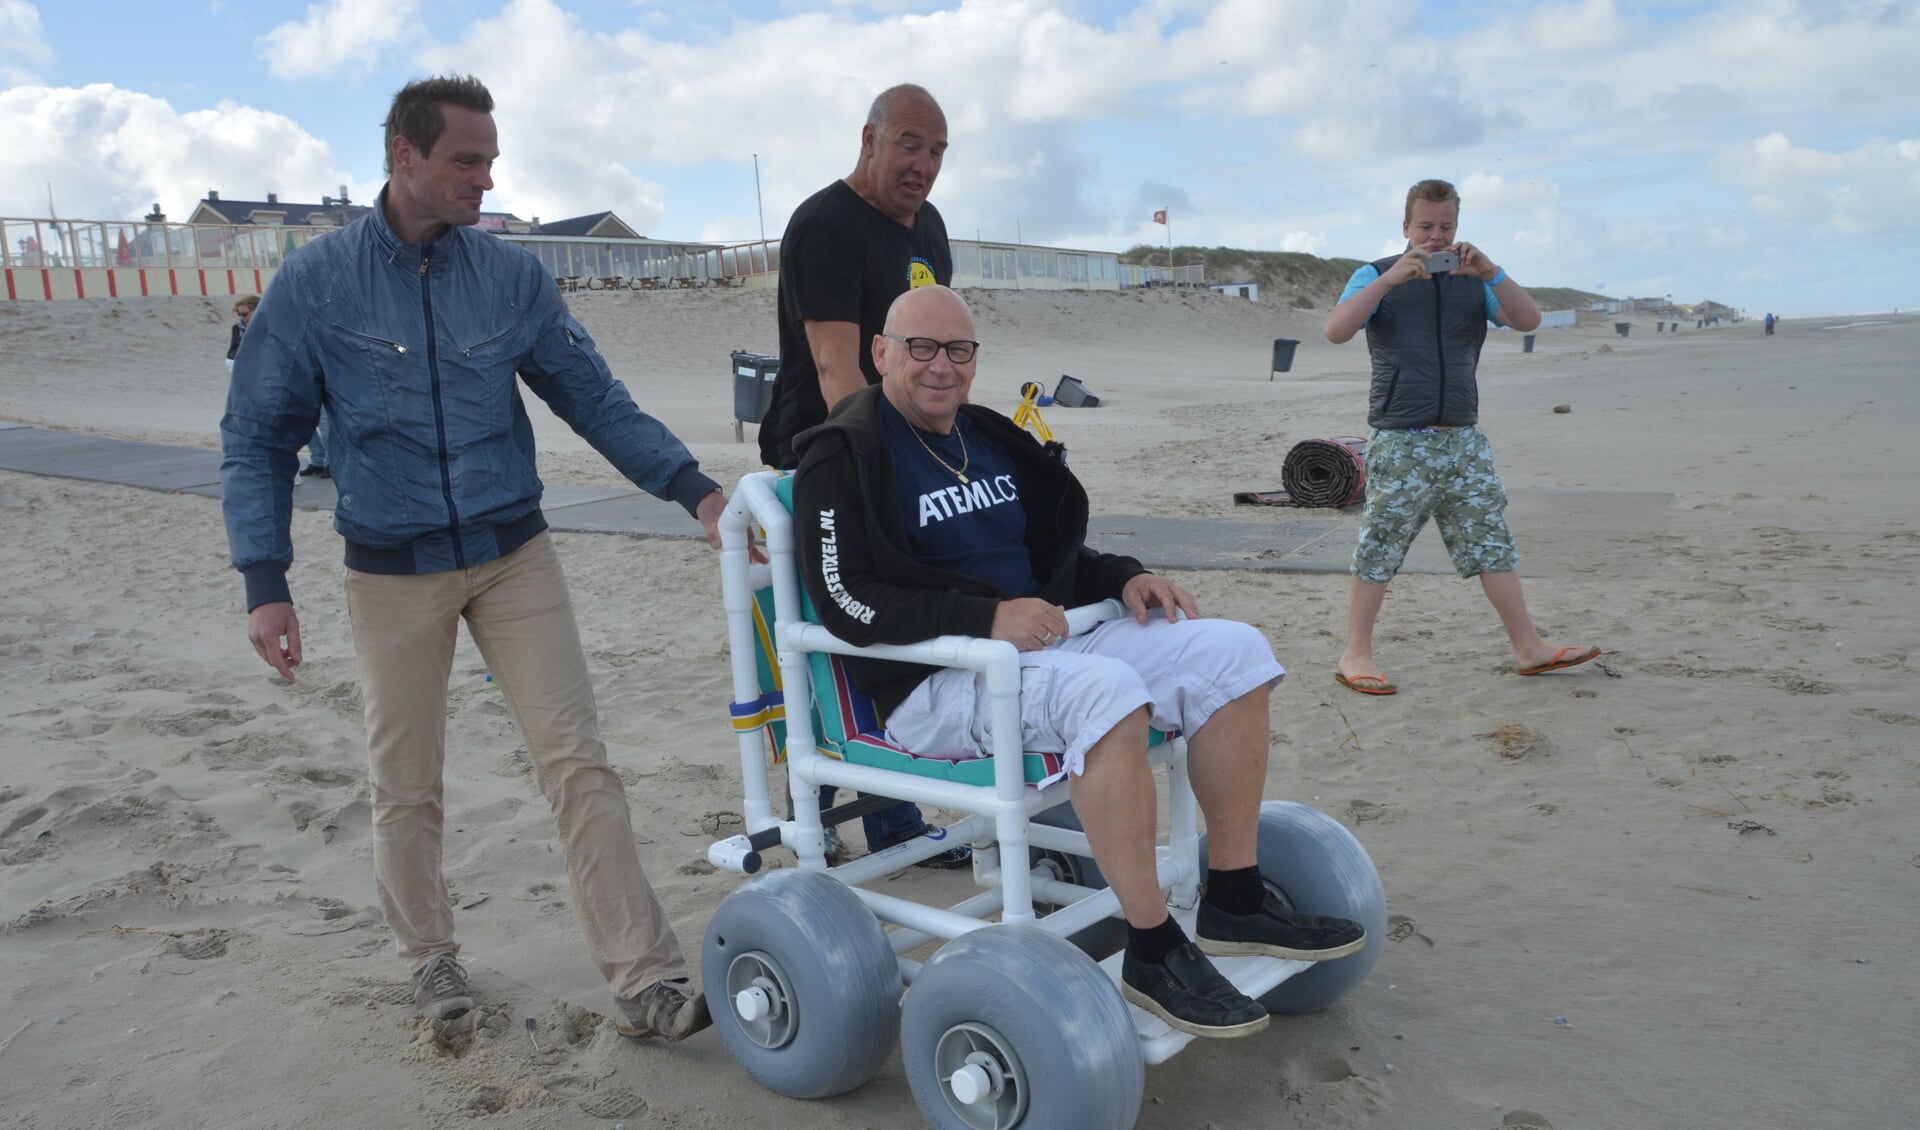 Paul van Dijk probeert de nieuwe rolstoel even uit, voortgeduwd door Jan van der Star en Stephan Kikkert.